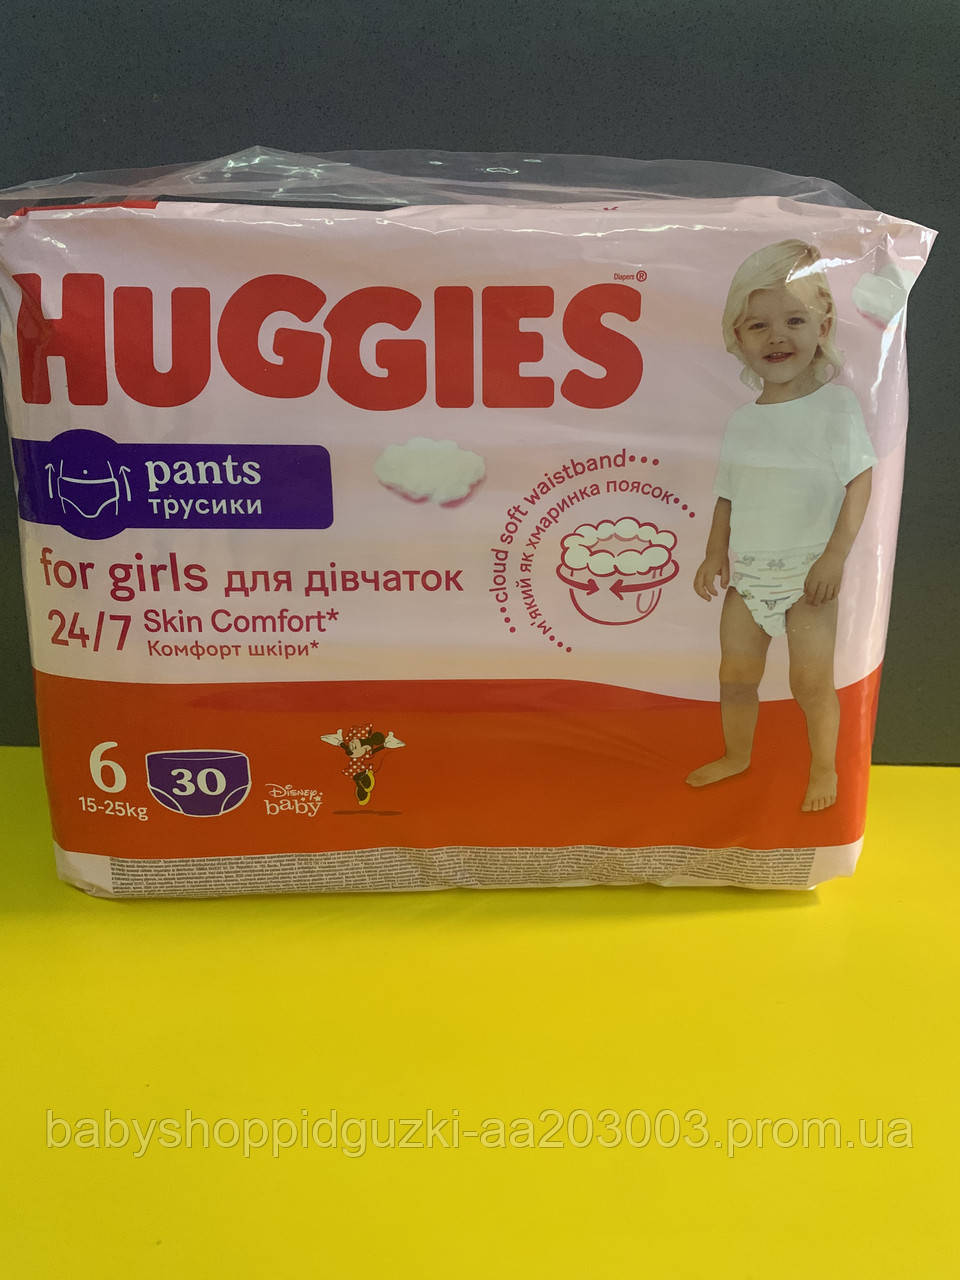 Huggies girls pants 6, трусики-хаггіс для дівчаток 6 розмір, підгузки трусики хаггіс, 6 розмір, трусики 6